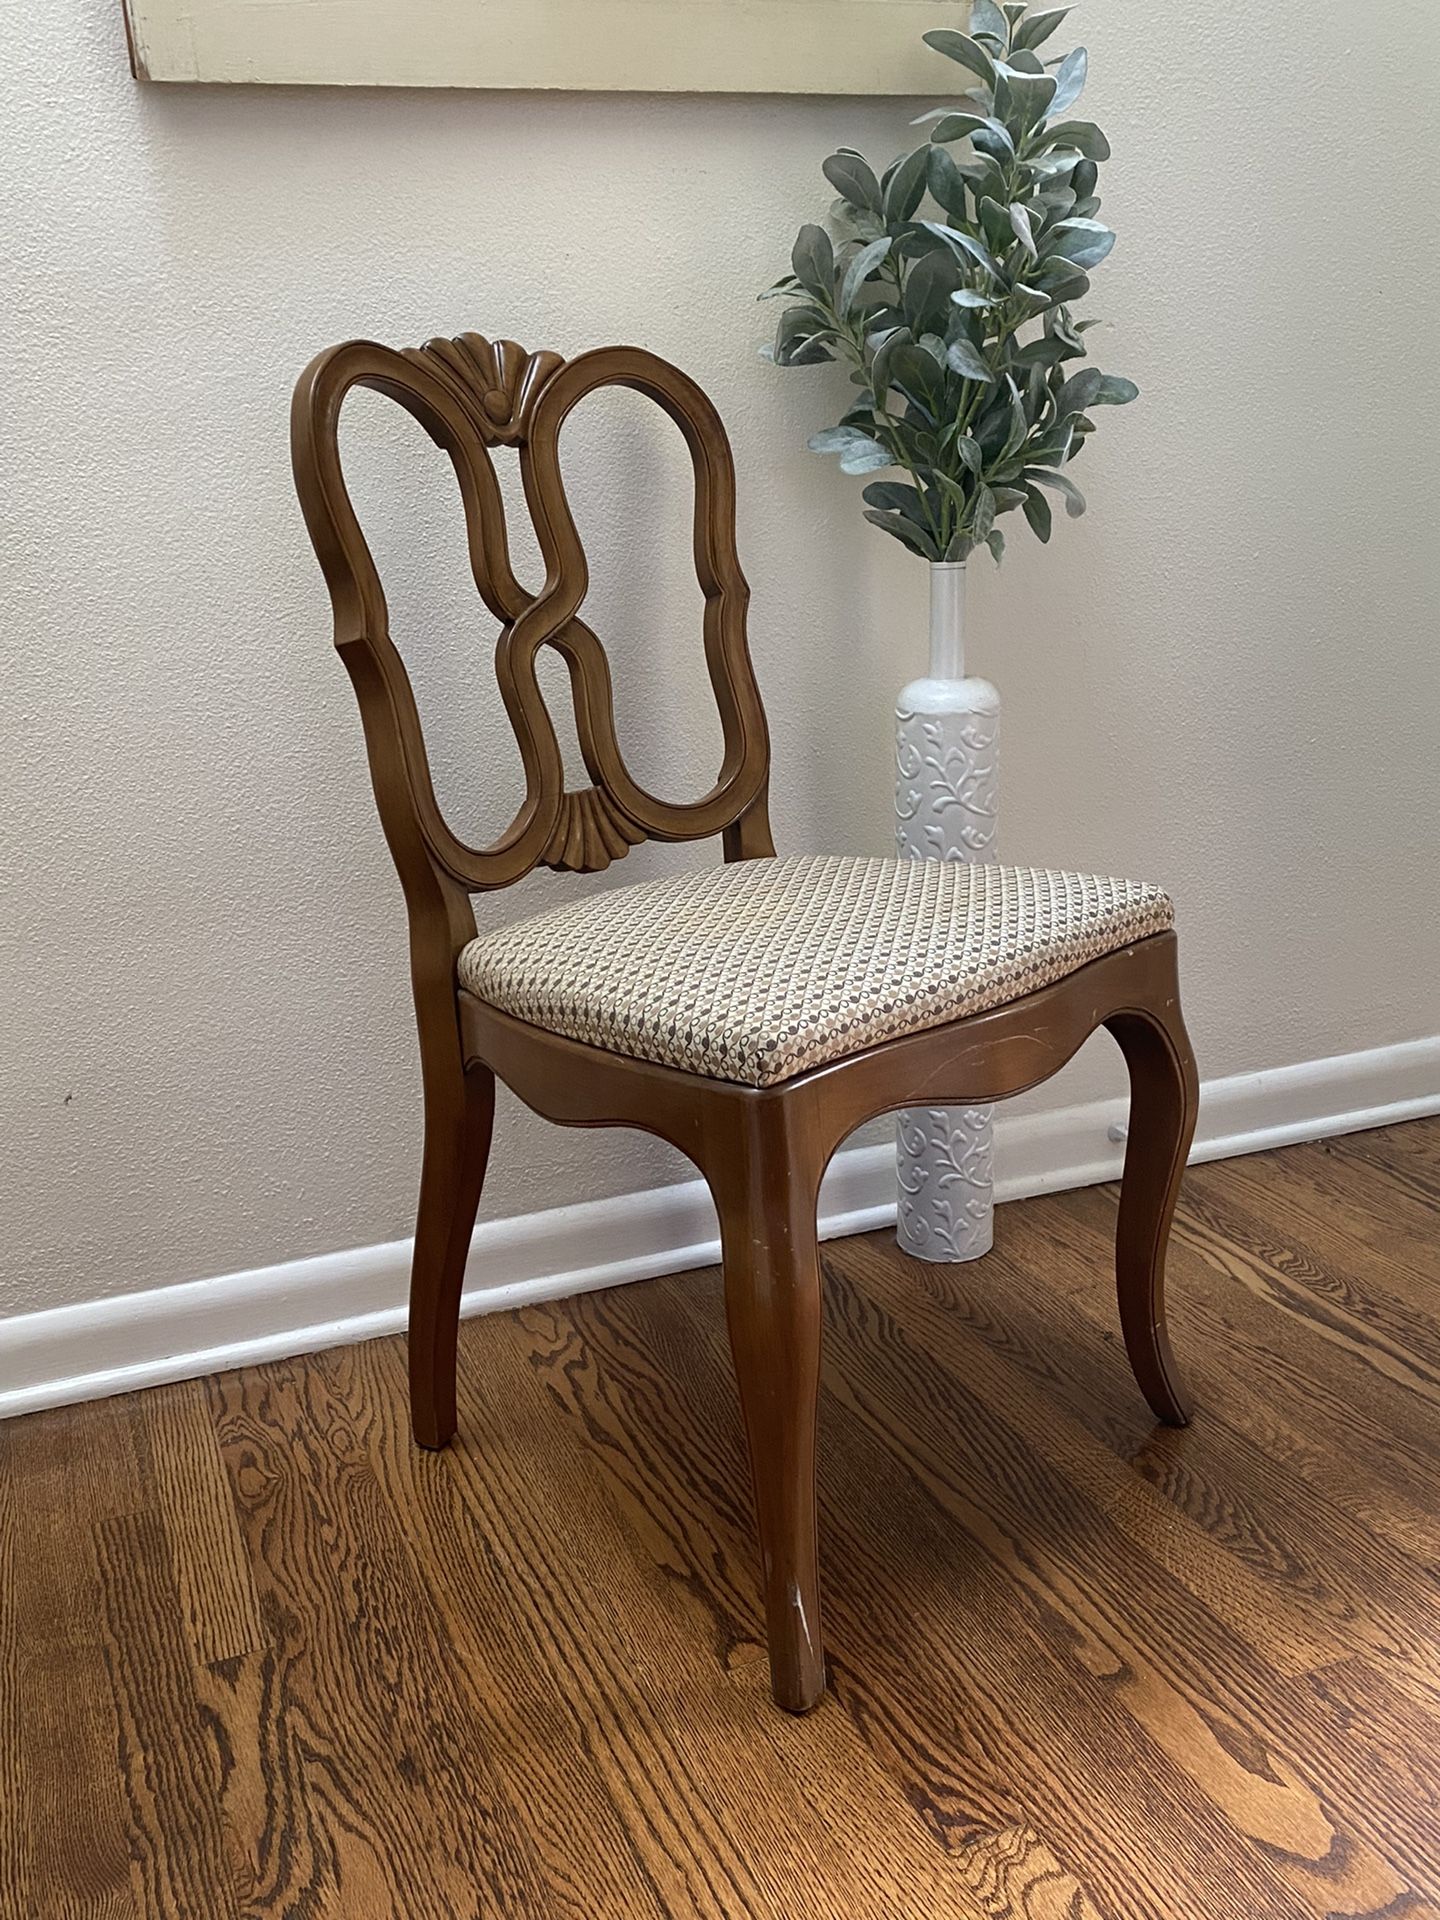 one wood vintage chair